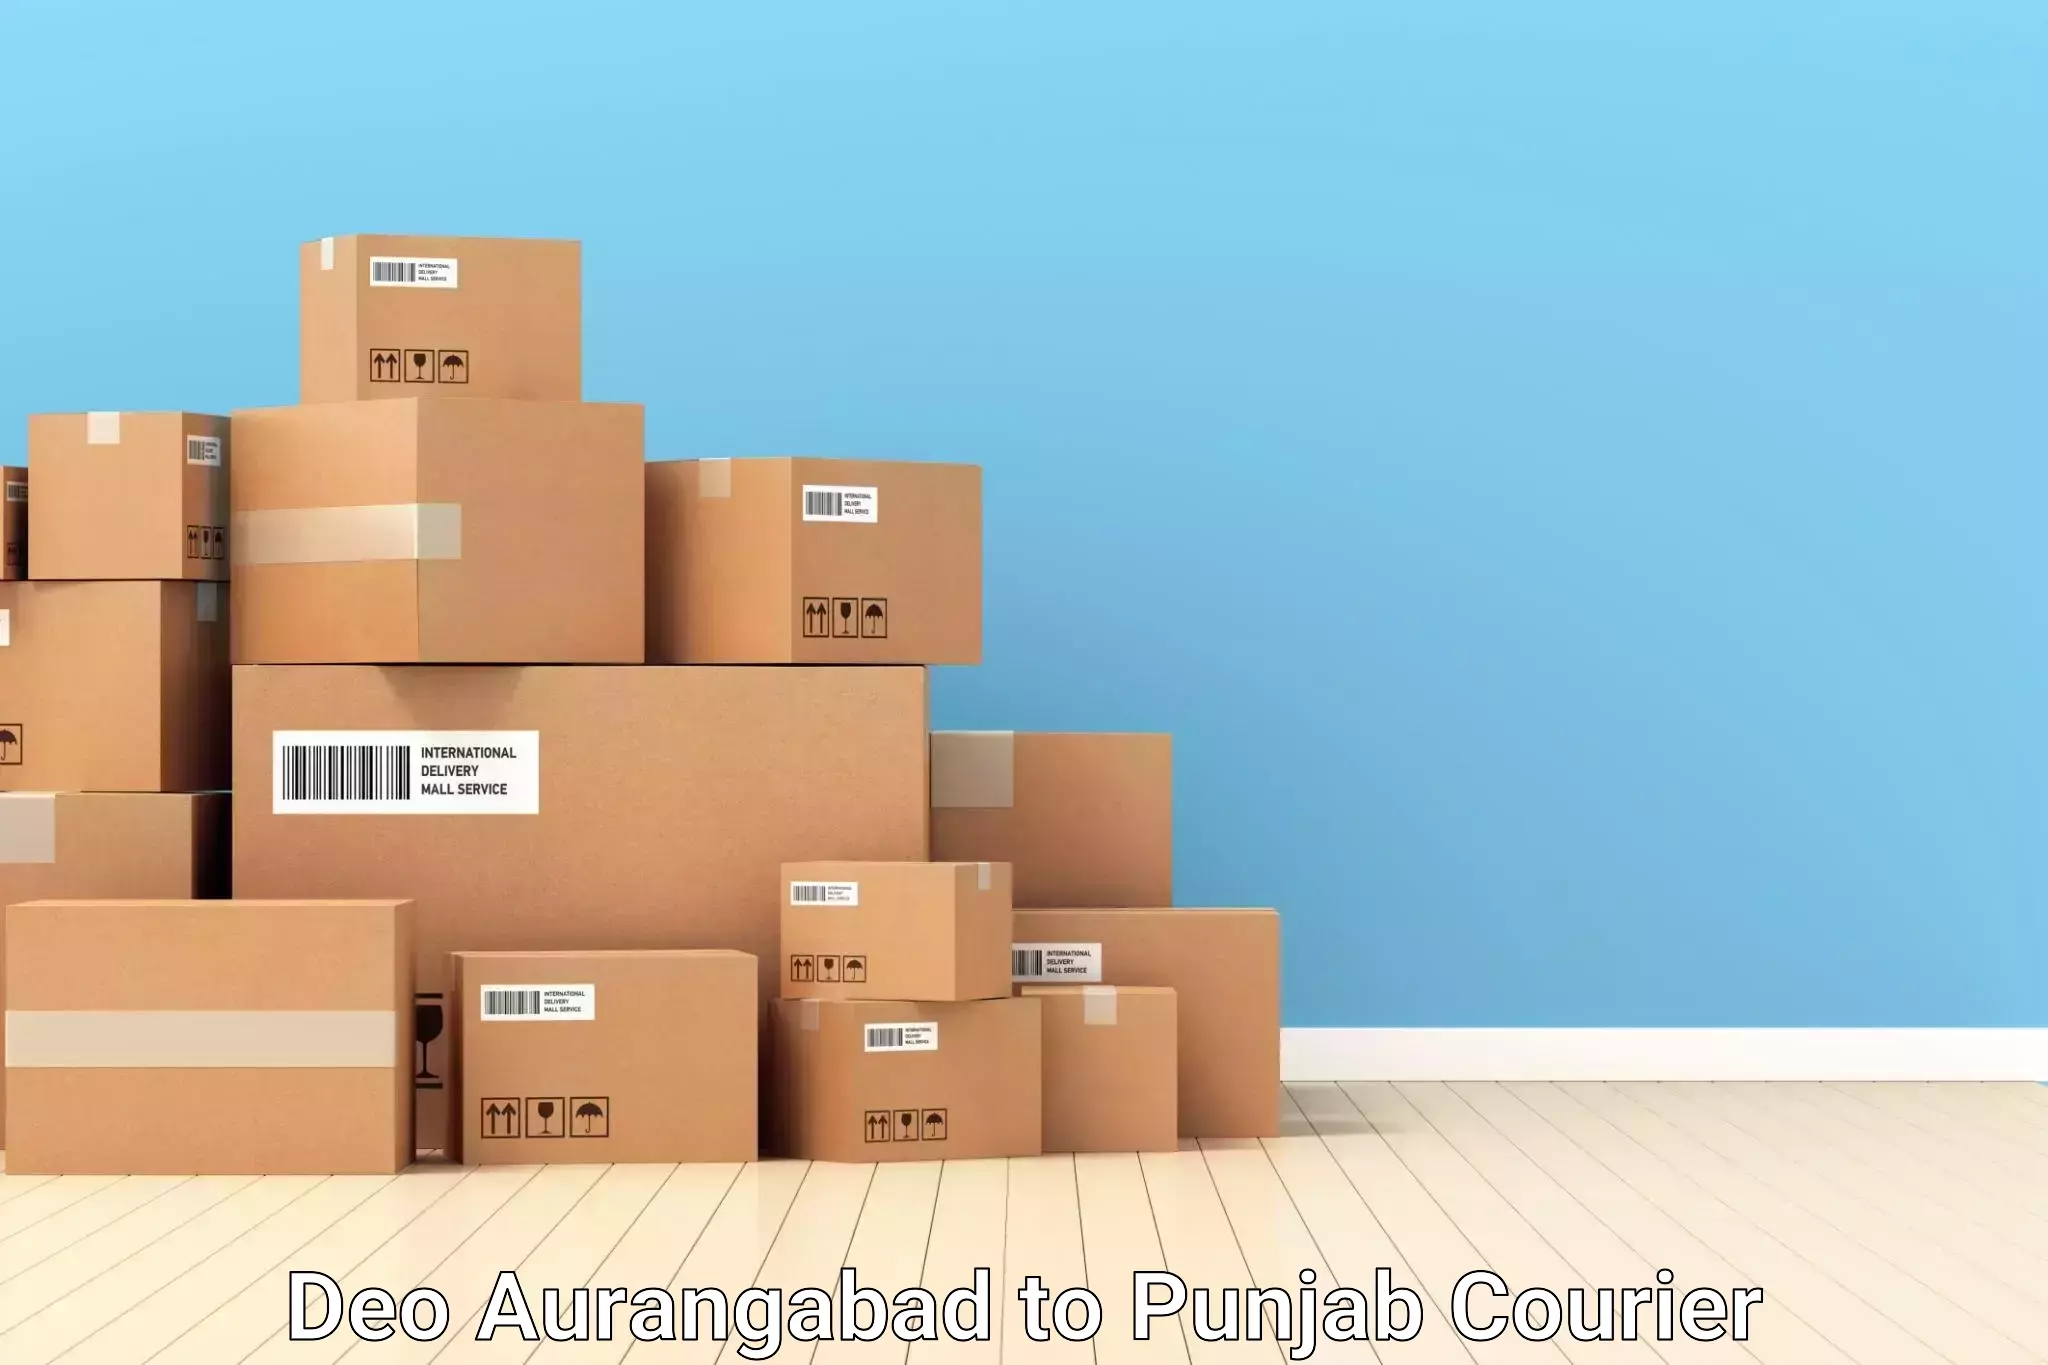 Automated luggage transport Deo Aurangabad to Punjab